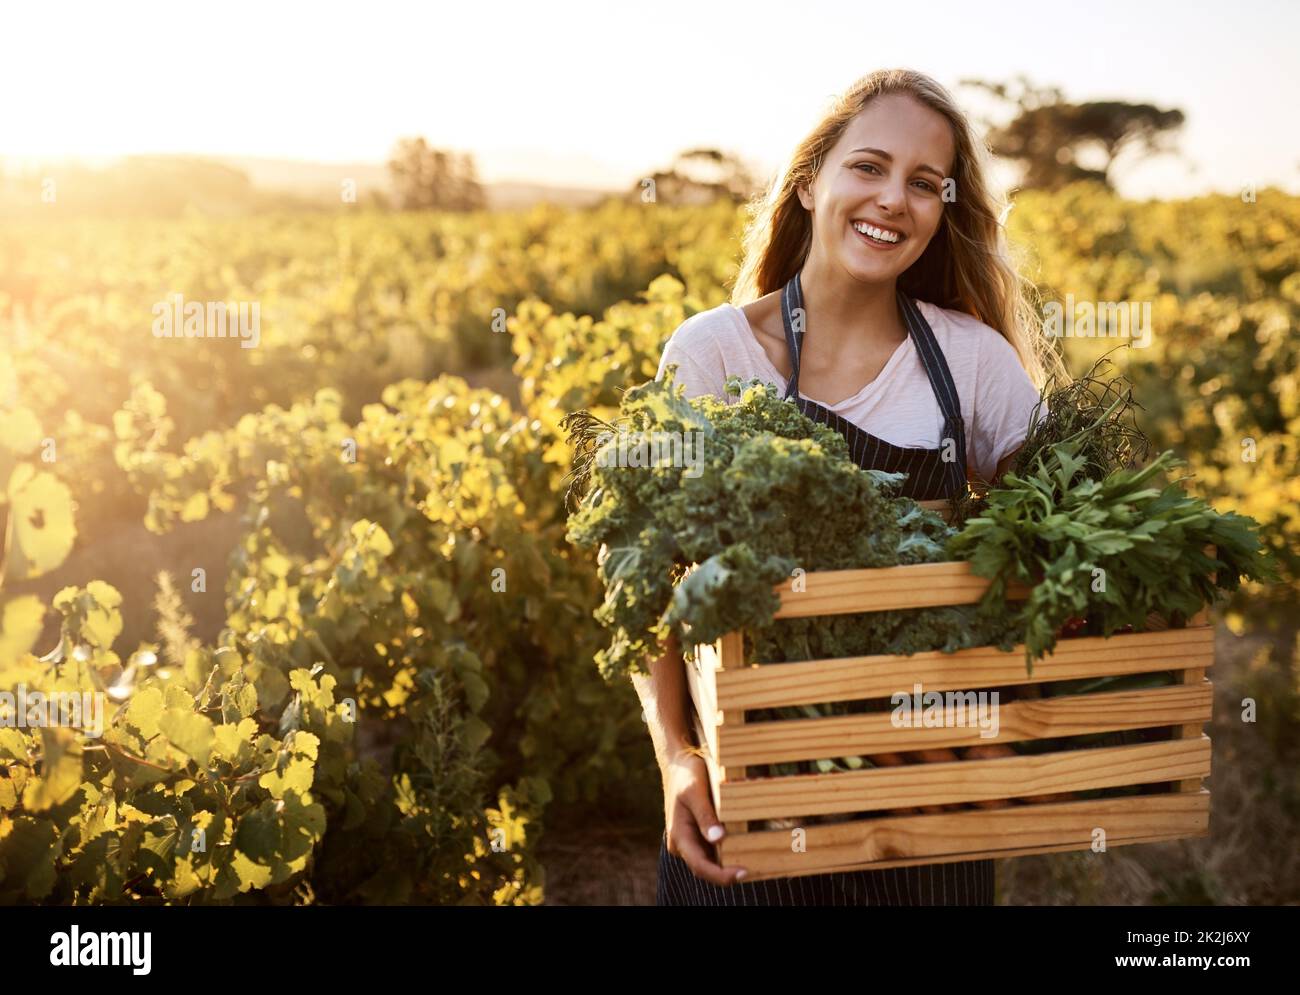 Cultiva tus alimentos orgánicamente. Tiro de una mujer joven que sostiene una caja llena de productos recién recogidos en una granja. Foto de stock